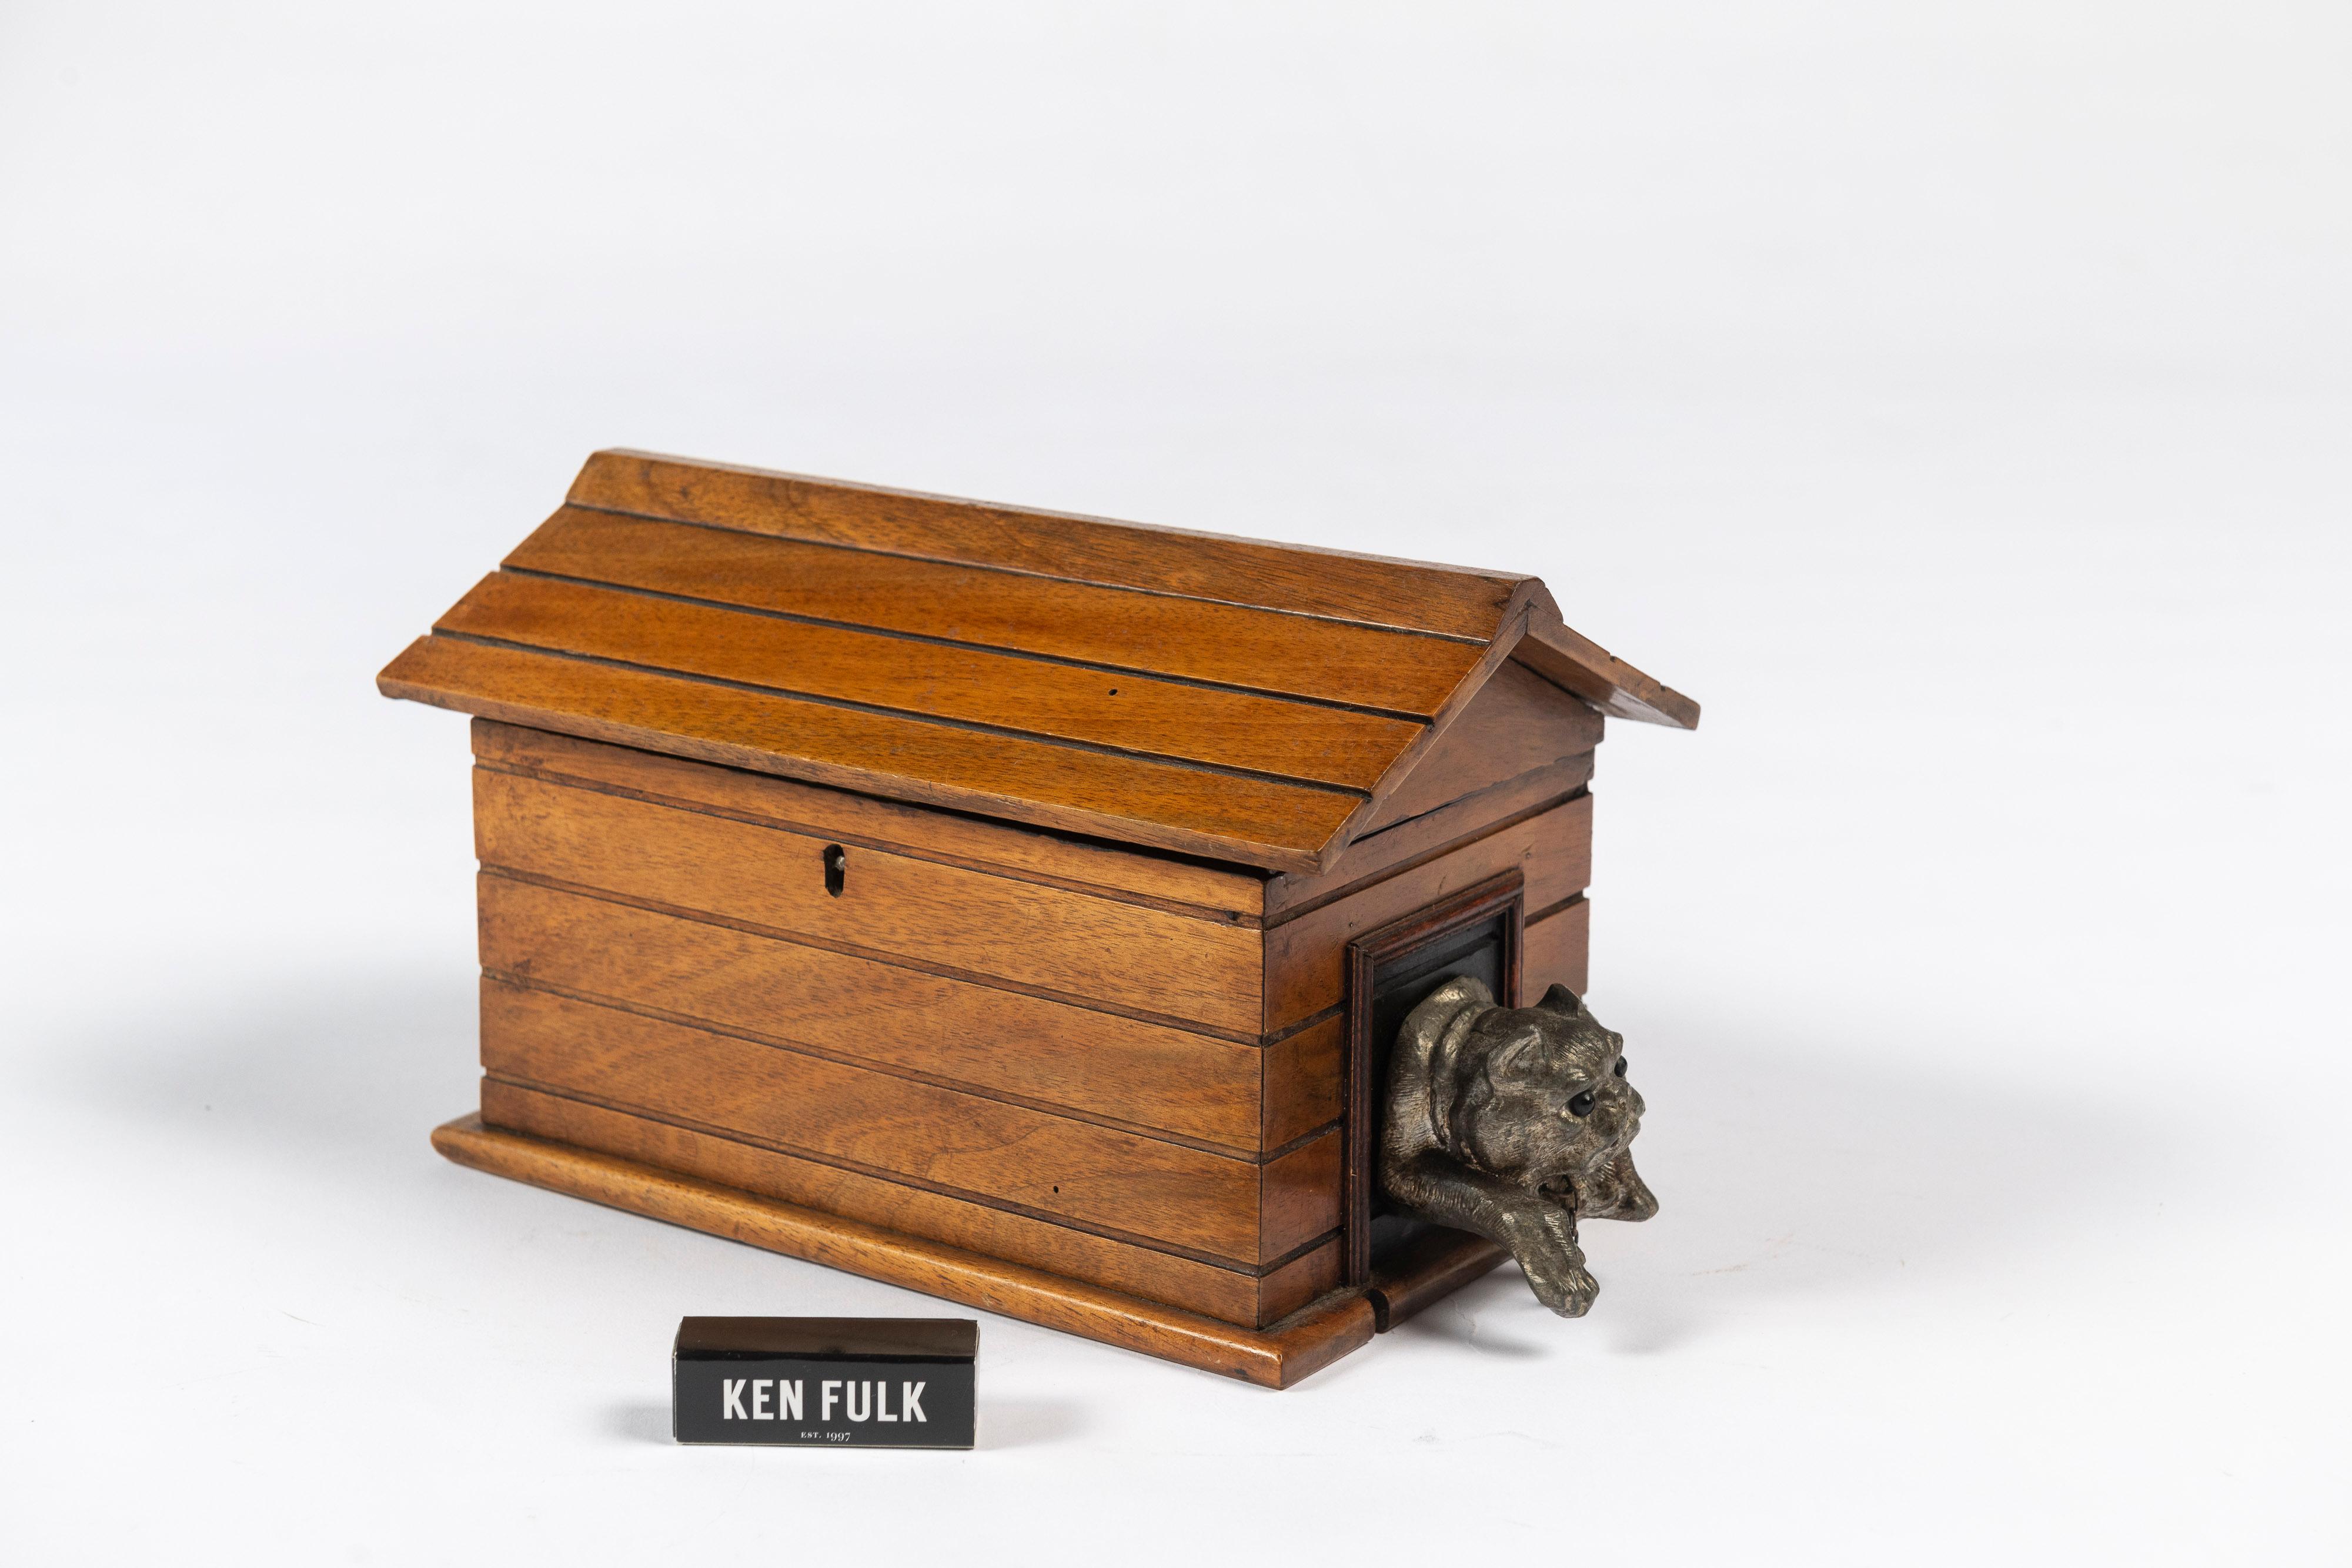 Charmante boîte à cigares ou cave à cigares du 19e siècle gardée par un chien en métal avec des yeux en verre sur un court bail. Ces boîtes sont parfaites pour les collectionneurs de boîtes, d'objets à thème canin ou d'accessoires pour fumeurs.